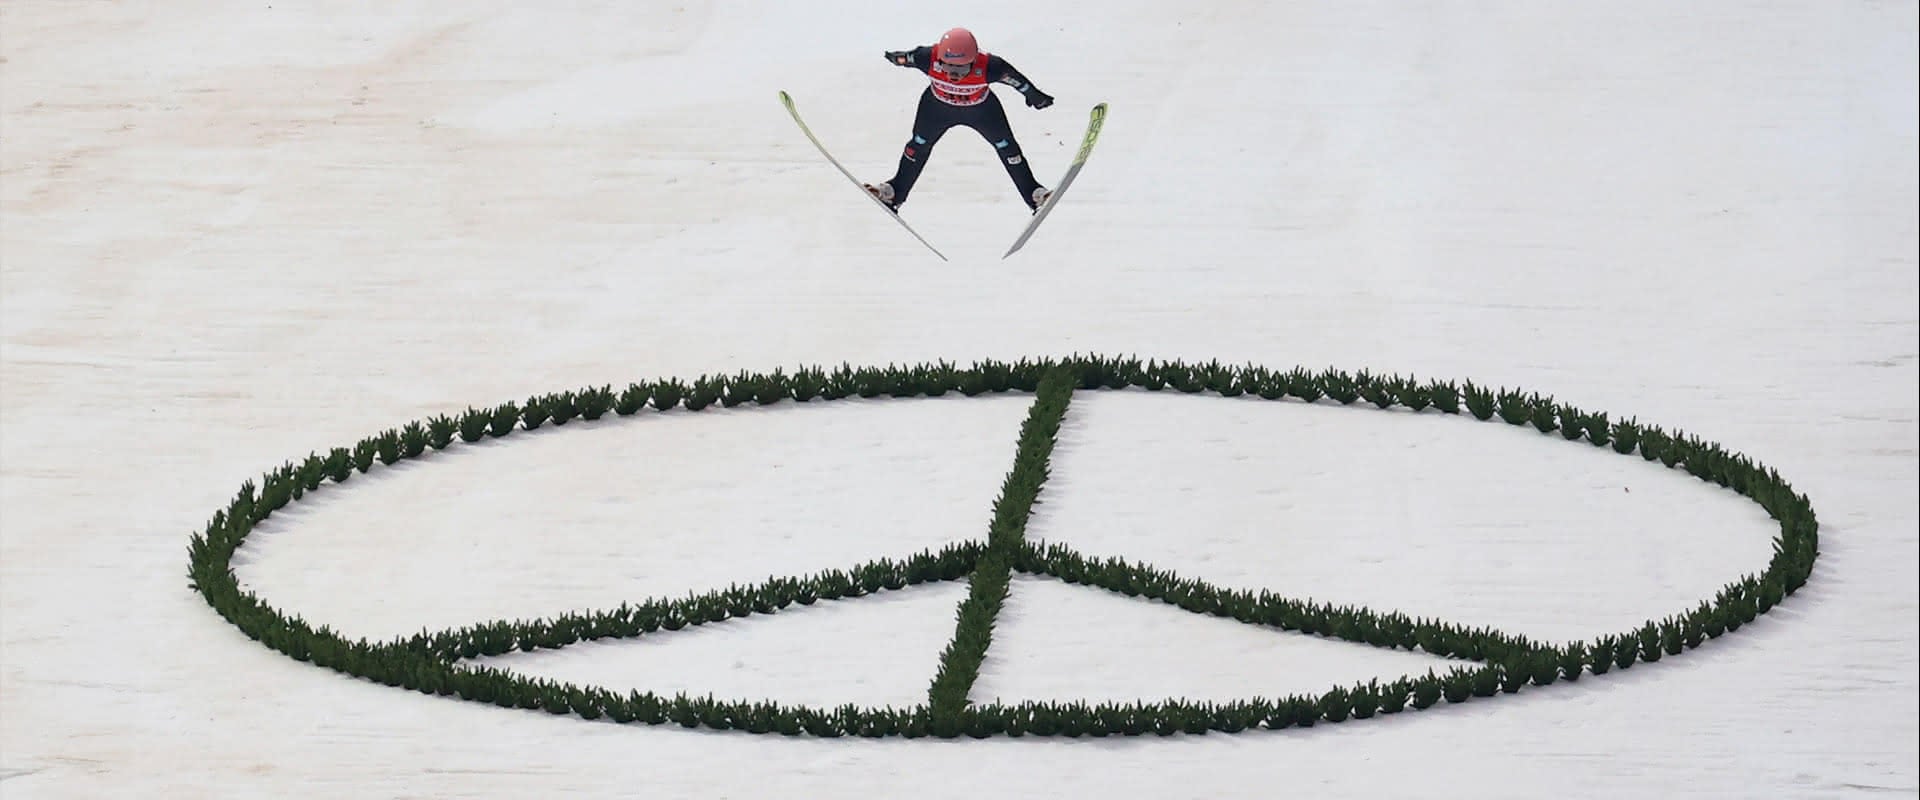 Karl Geiger beim Weltcup-Skifliegen über einem Peace-Zeichen auf der Heini-Klopfer-Schanze als Solidaritätsbekundung für die Ukraine.